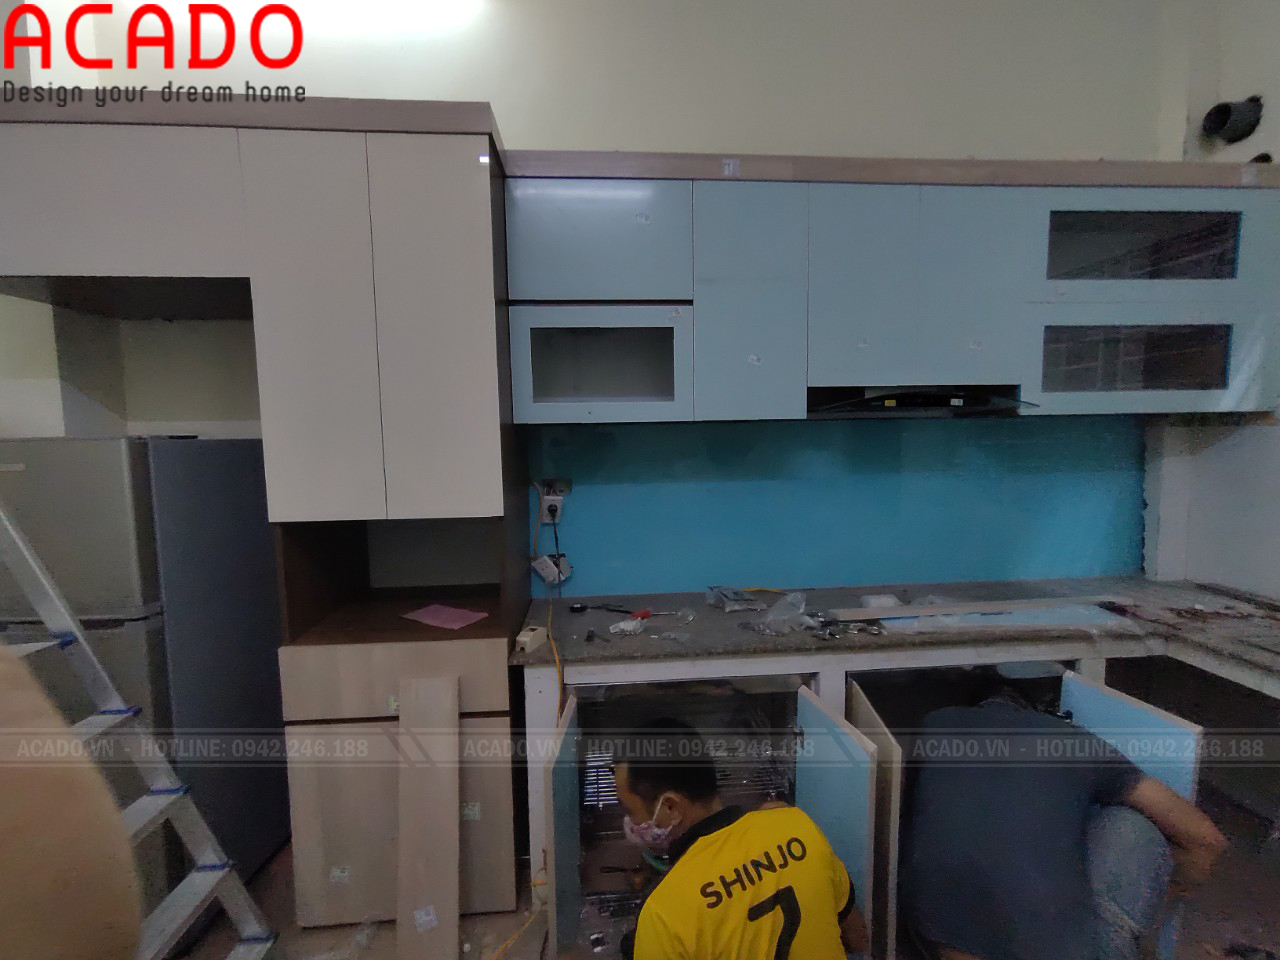 Thợ thi công ACADO bắt đầu lắp đặt tủ bếp cho gia đình chị Lan